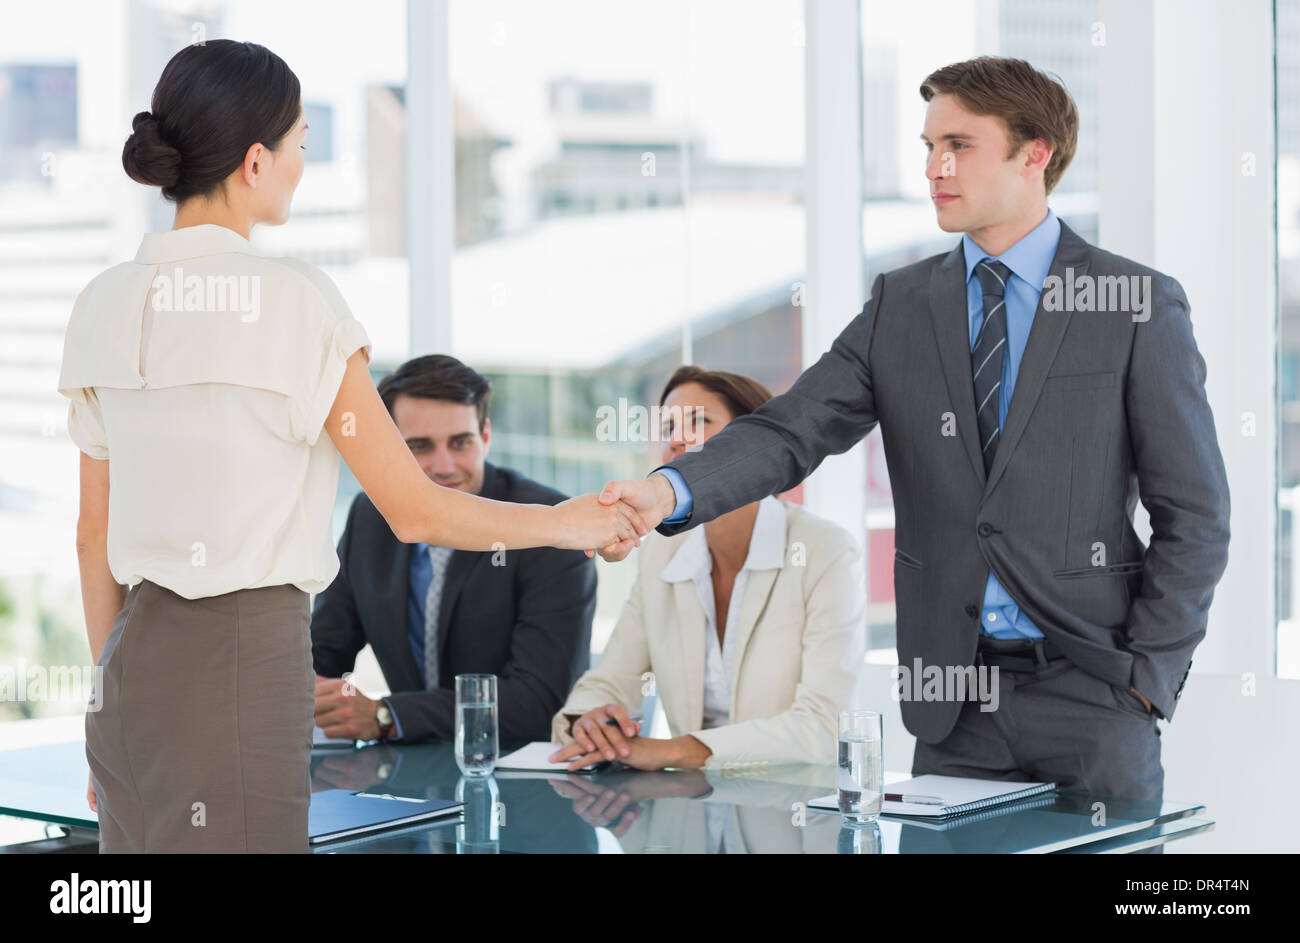 Apretón de manos para sellar un acuerdo después de una reunión de trabajo, el reclutamiento Foto de stock